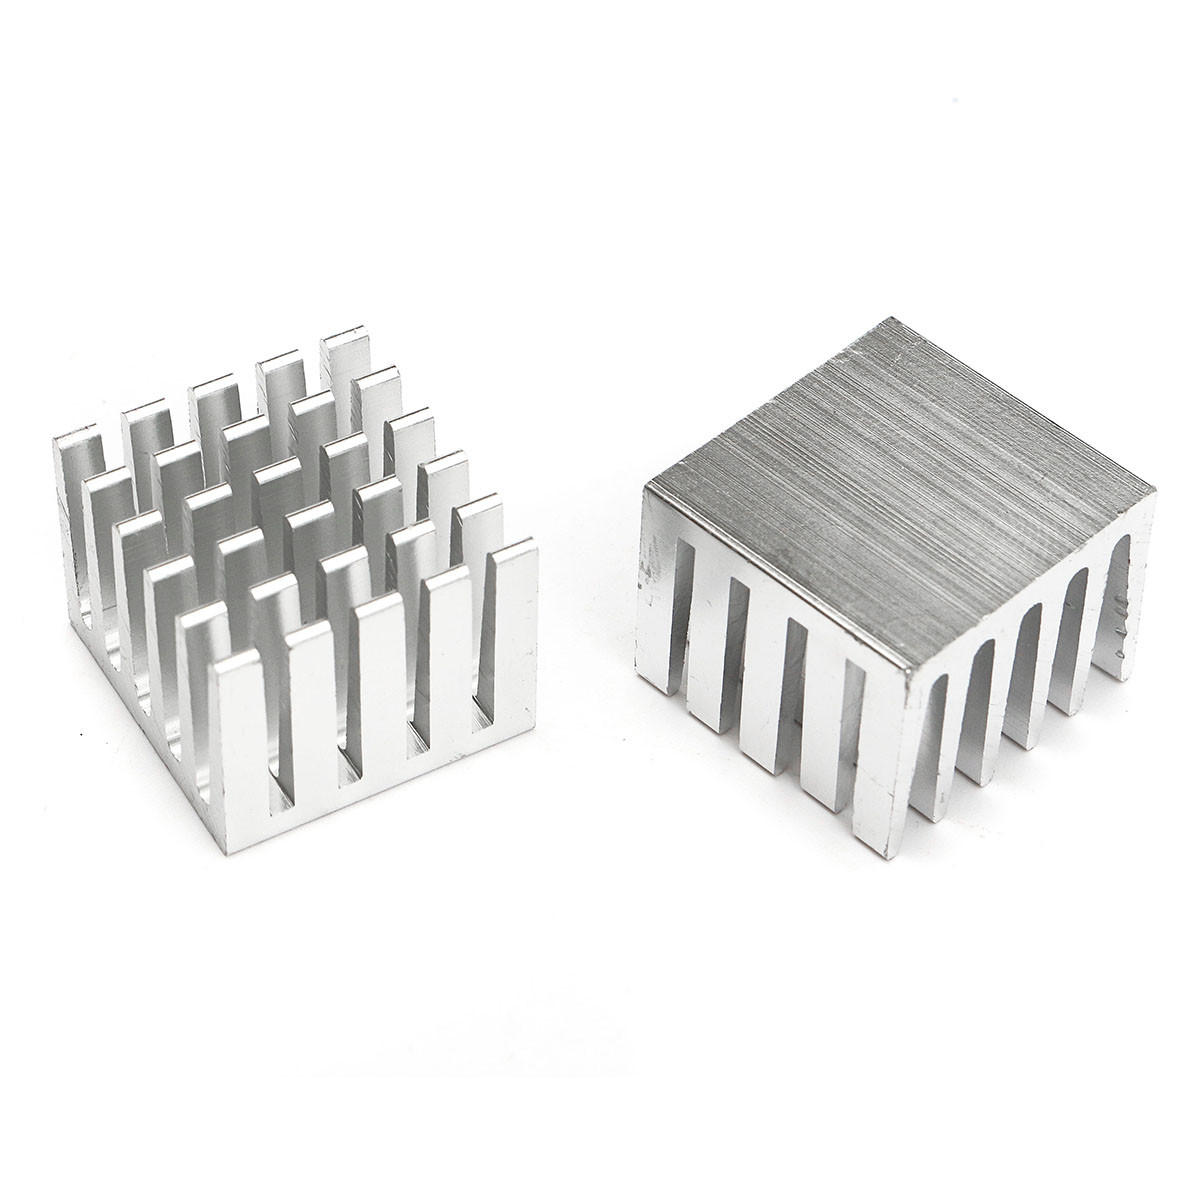 20 stuks 20x20x15mm dhz cpu ic chip koellichaam geëxtrudeerde koeler aluminium koellichaam